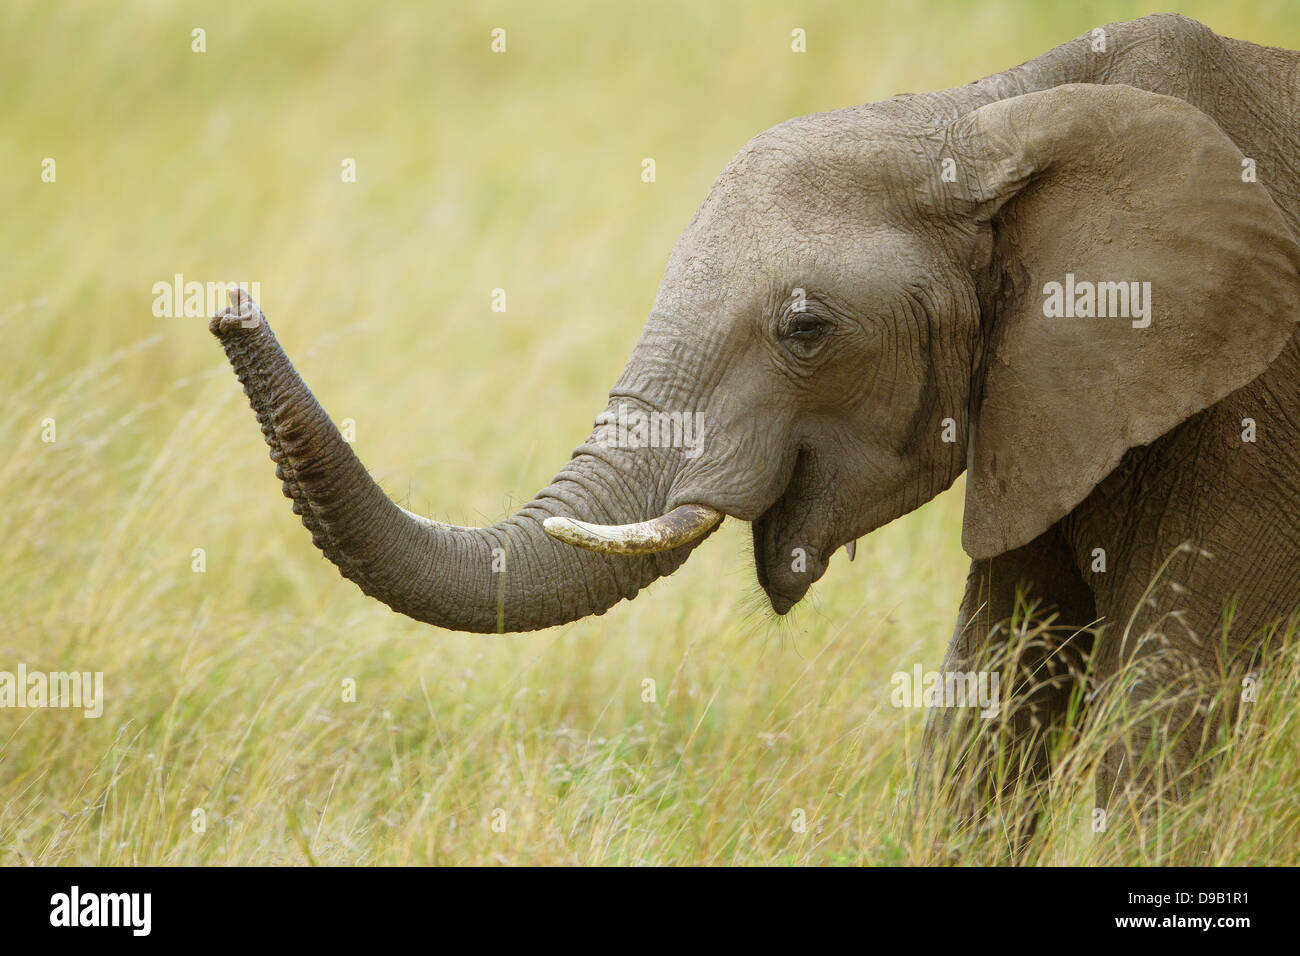 Elephant close-up portrait, Masai Mara, Kenya Banque D'Images